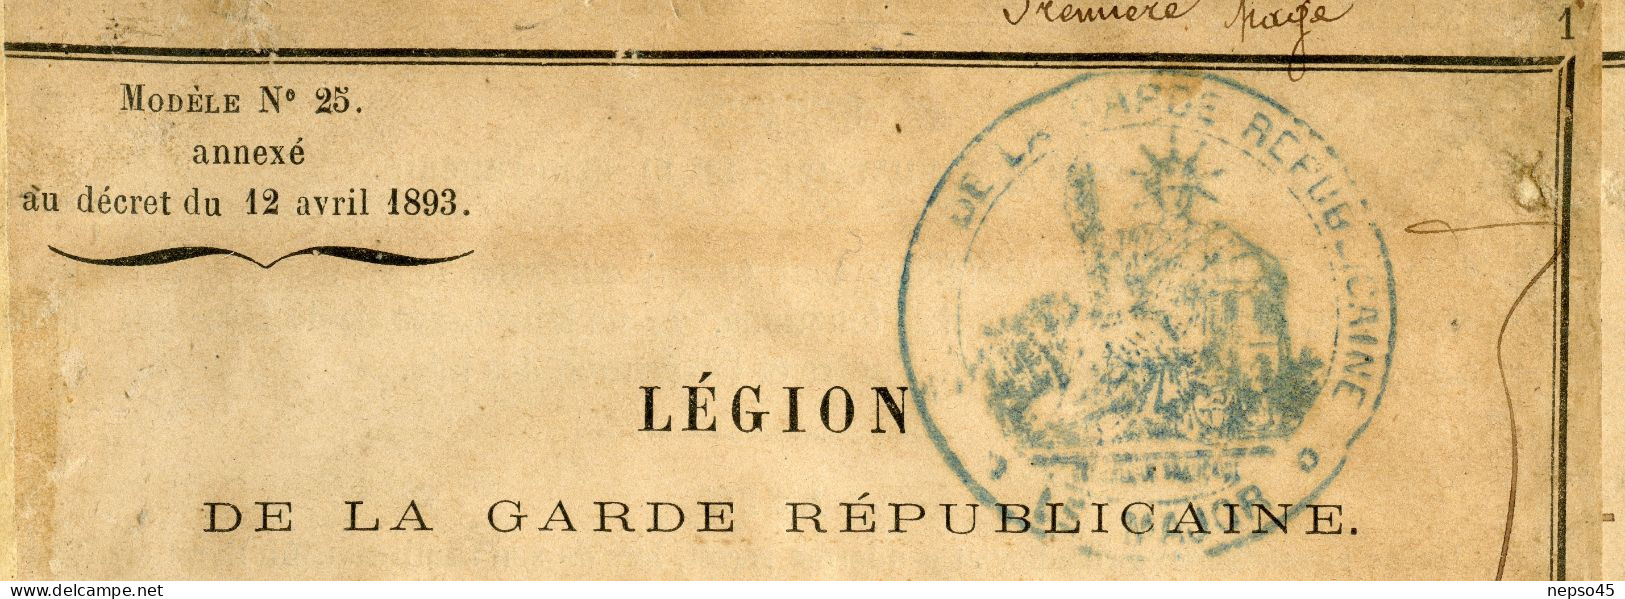 Légion Garde Républicaine 1ère Compagnie.Livret.S/Officiers Brigadiers et Gardes.période 1895-1913.